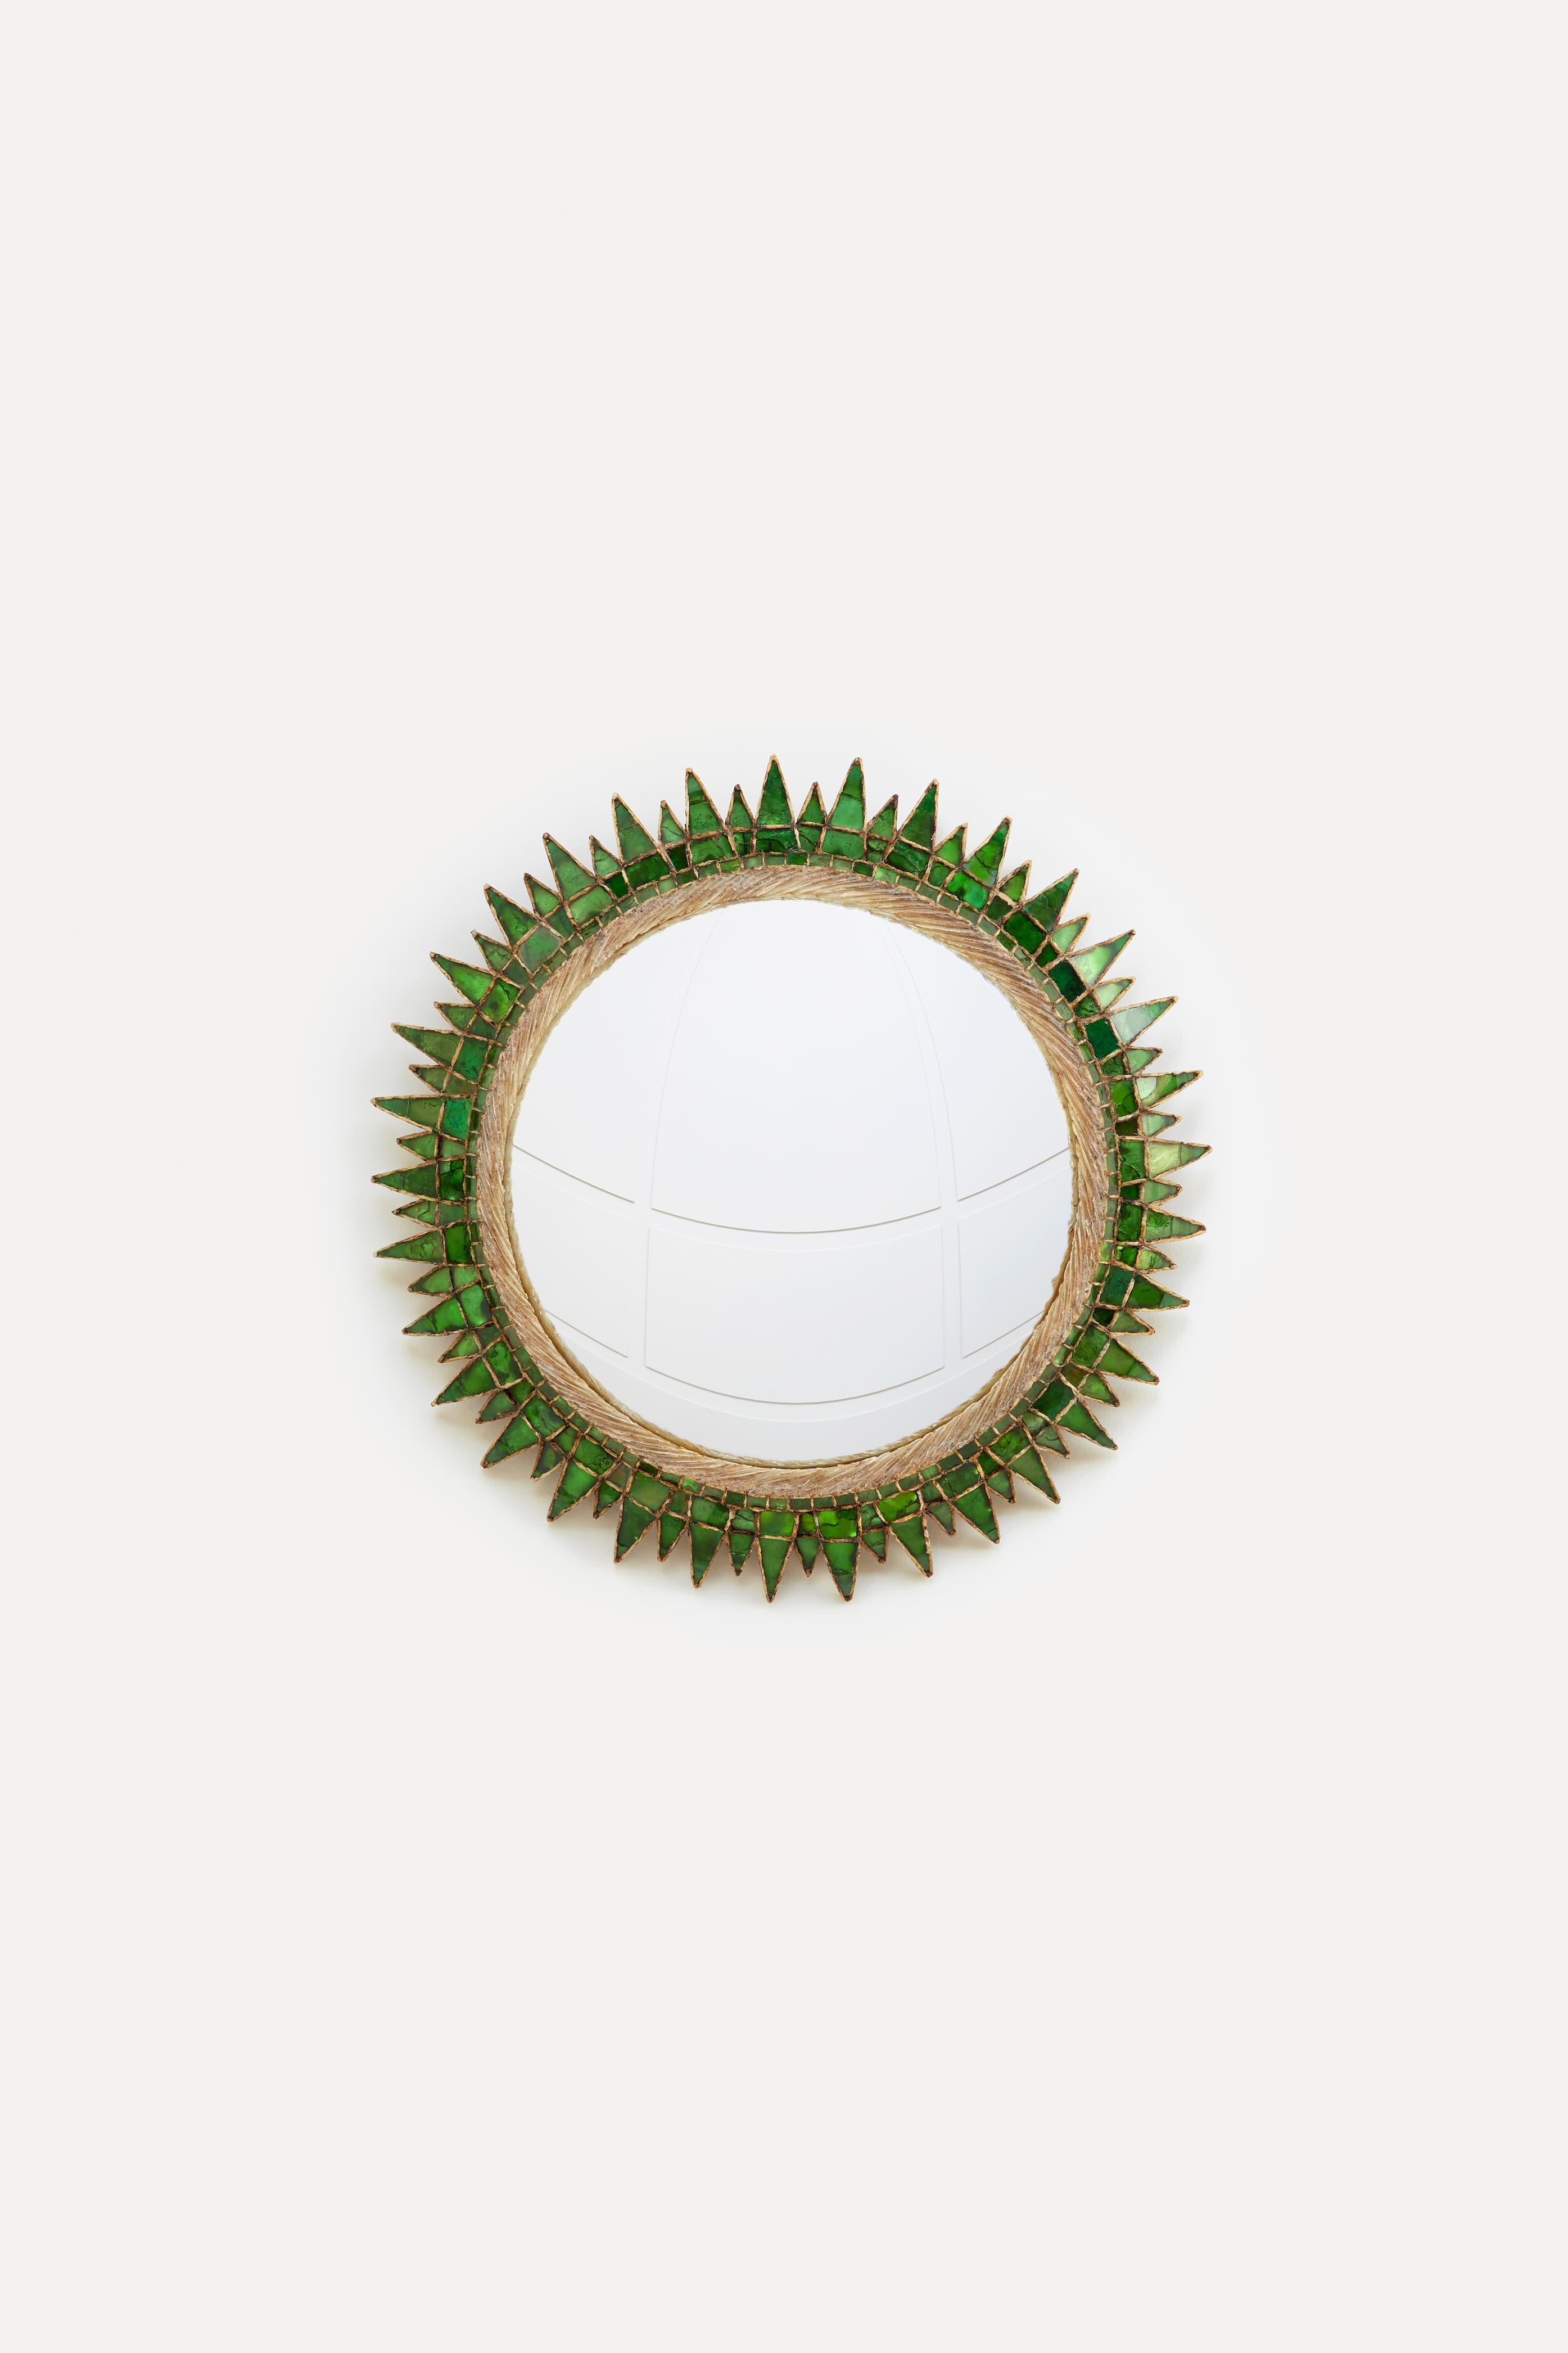 Line Vautrin, “Soleil à Pointes n° 4” green mirror, vue 01